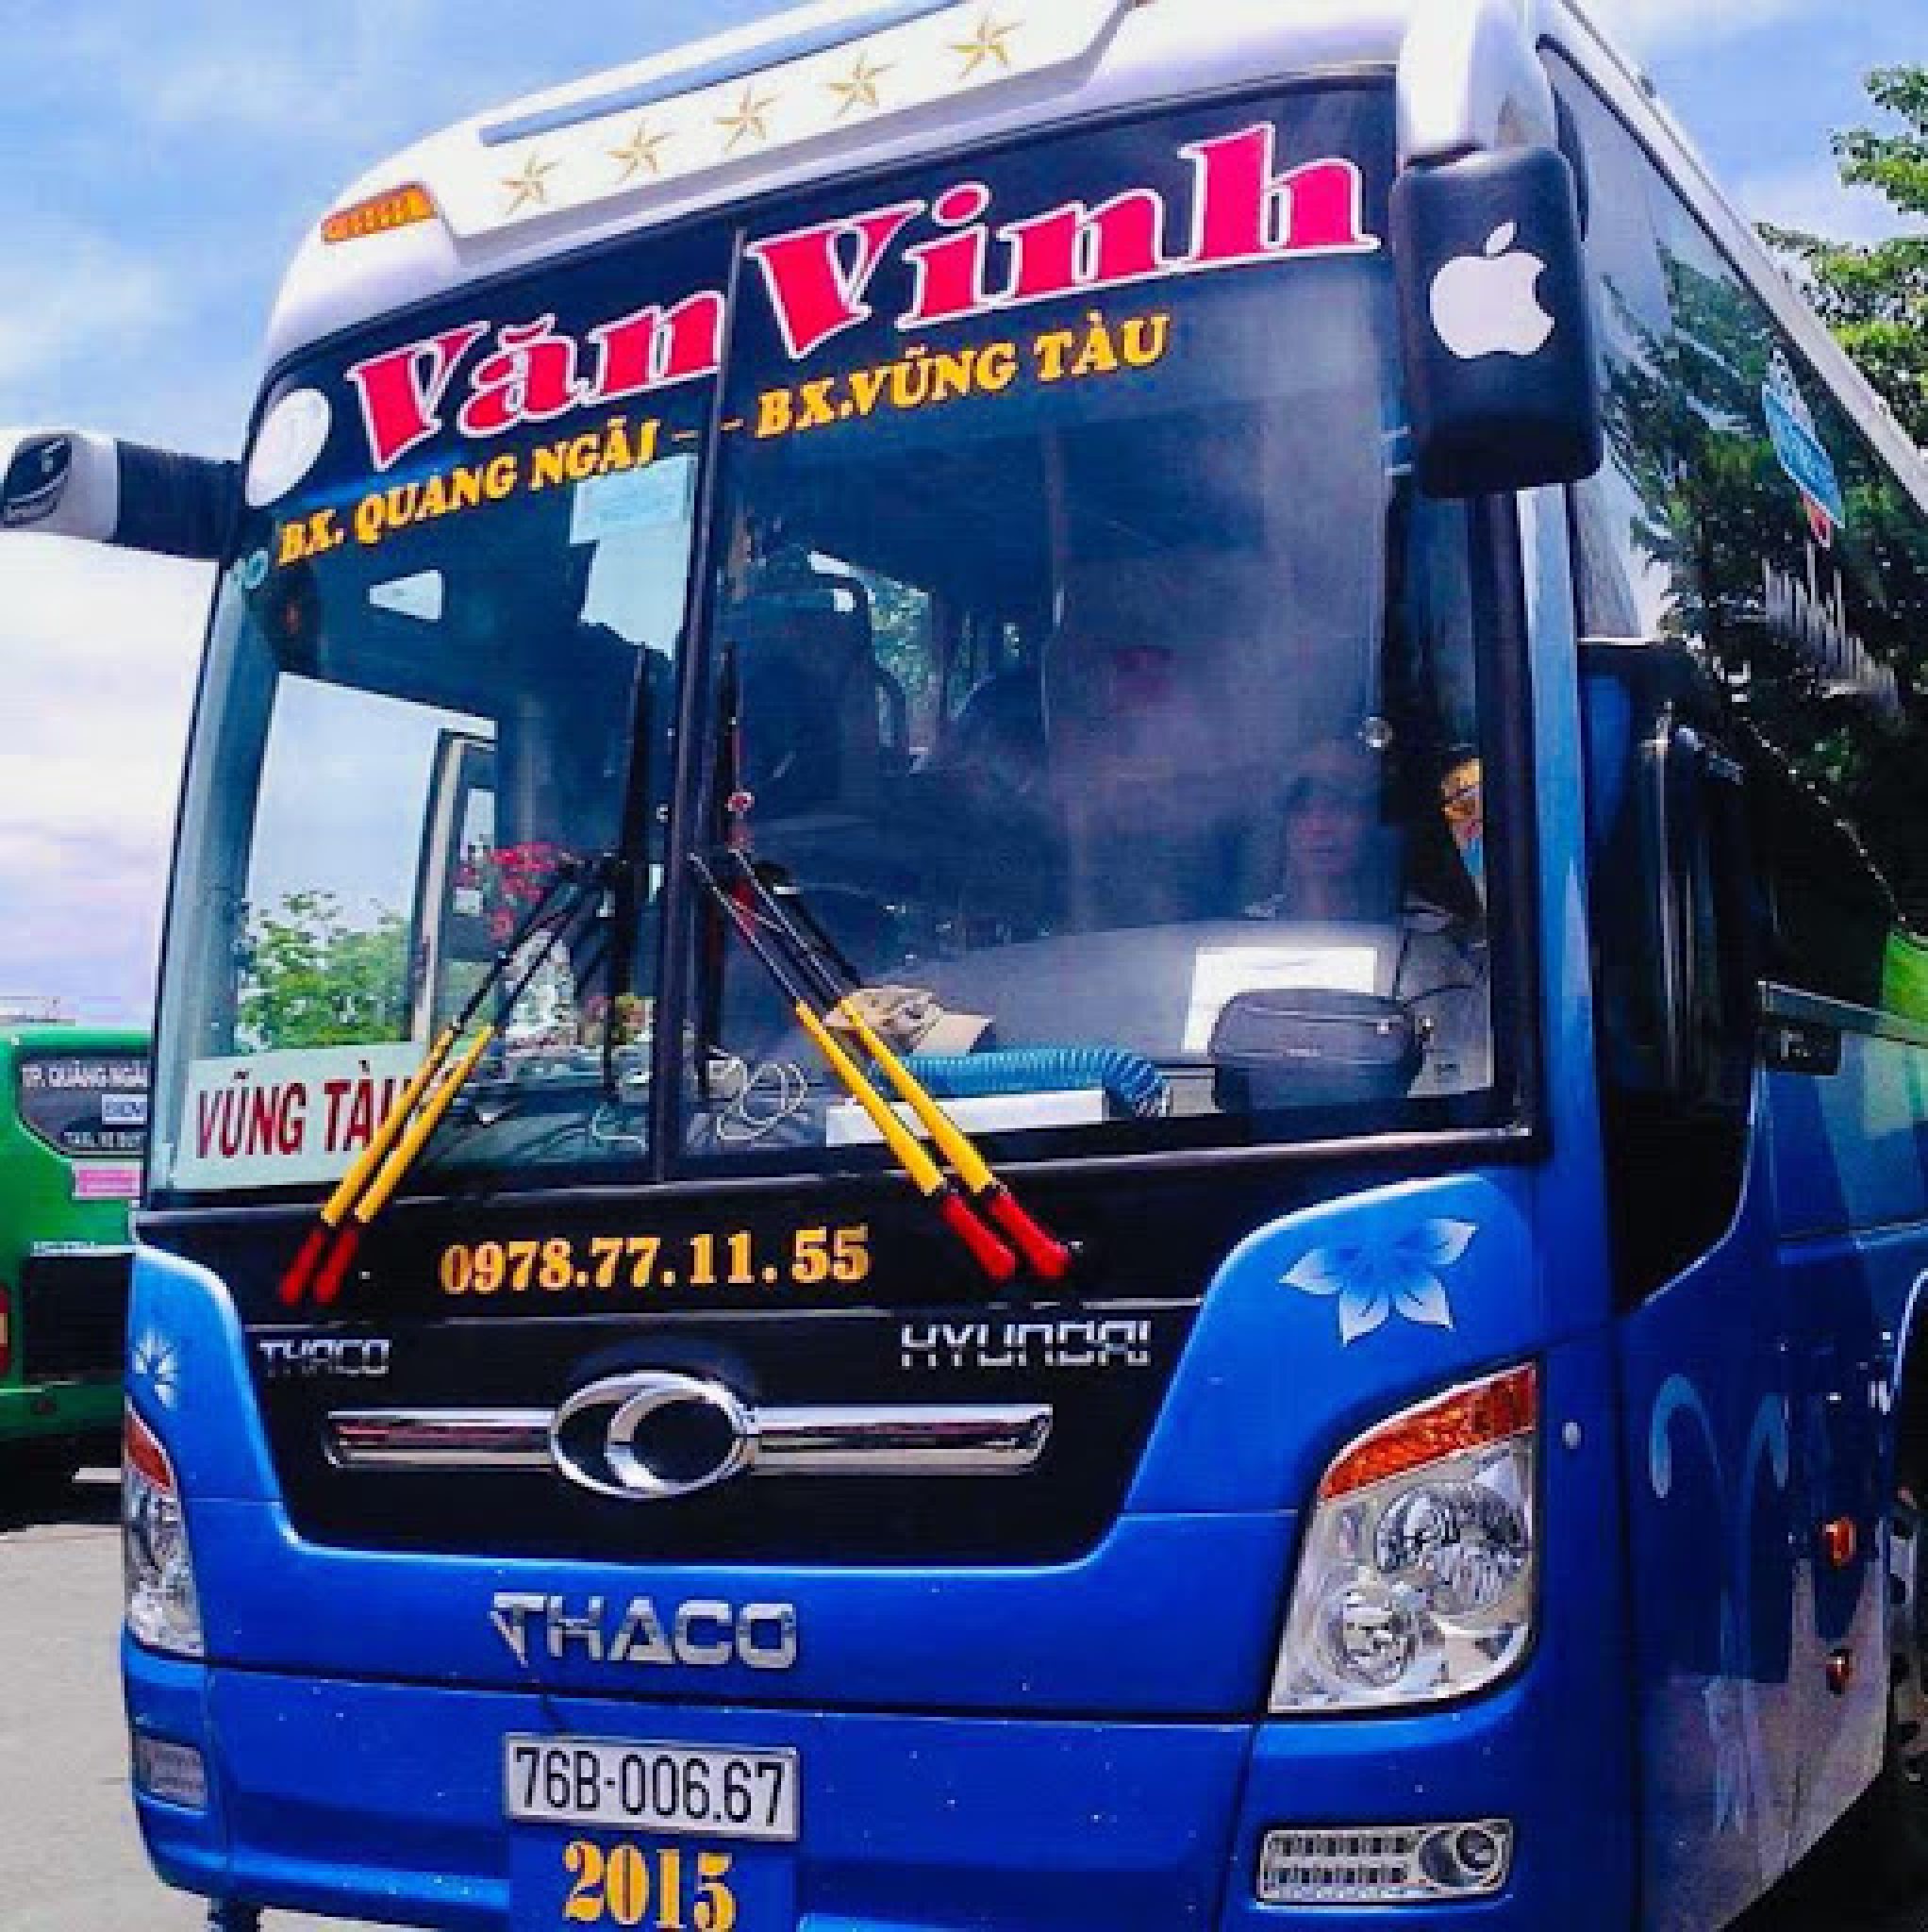 Danh sách xe khách tuyến Bình Định đi Bà Rịa-Vũng Tàu chất lượng nhất ...